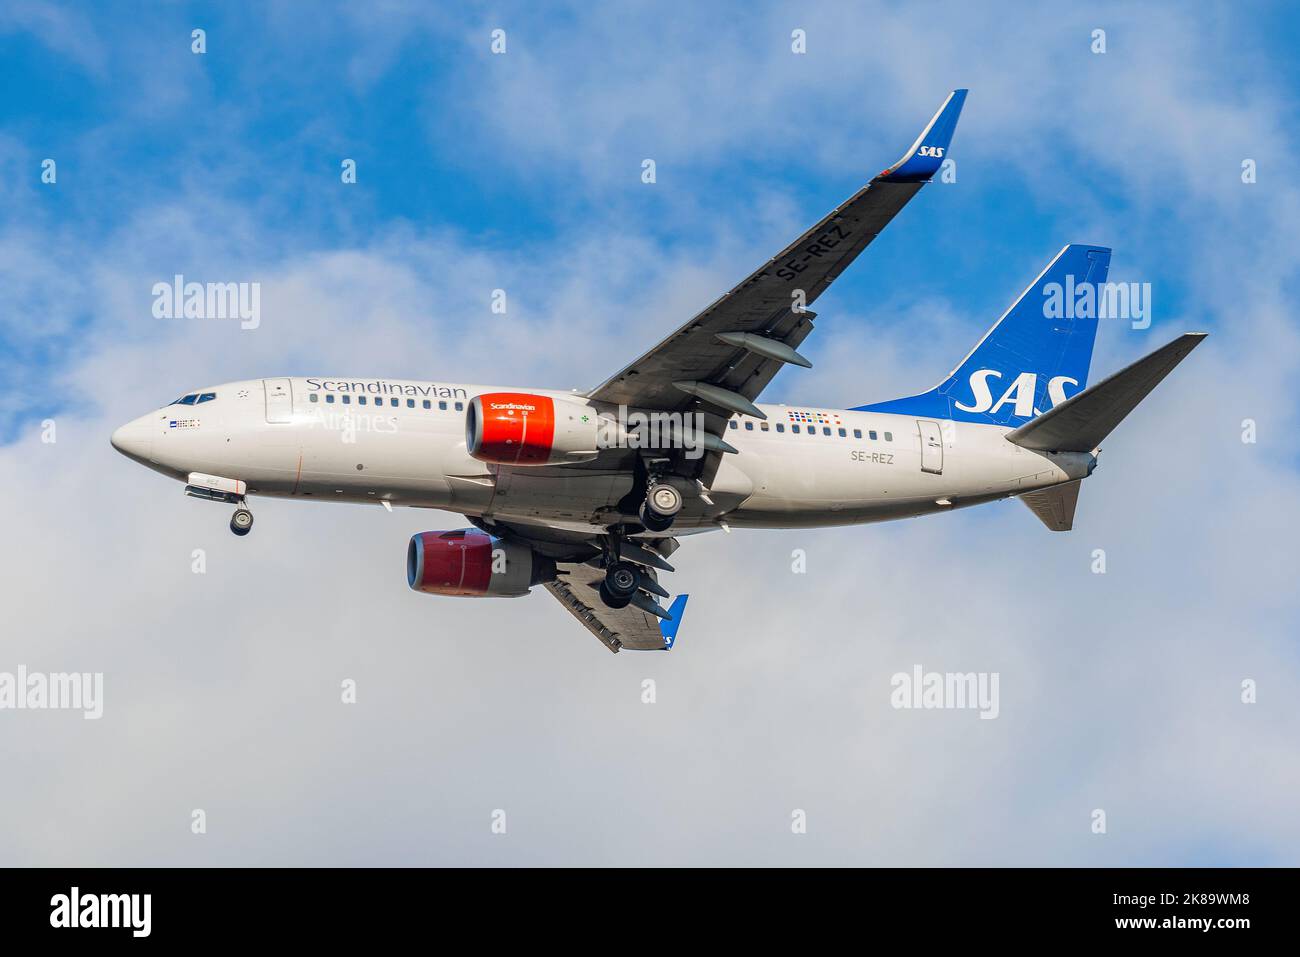 SANKT PETERSBURG, RUSSLAND - 25. OKTOBER 2018: Boeing 737-700 (SE-REZ) der SAS Scandinavian Airlines auf Gleithang. Seitenansicht Stockfoto